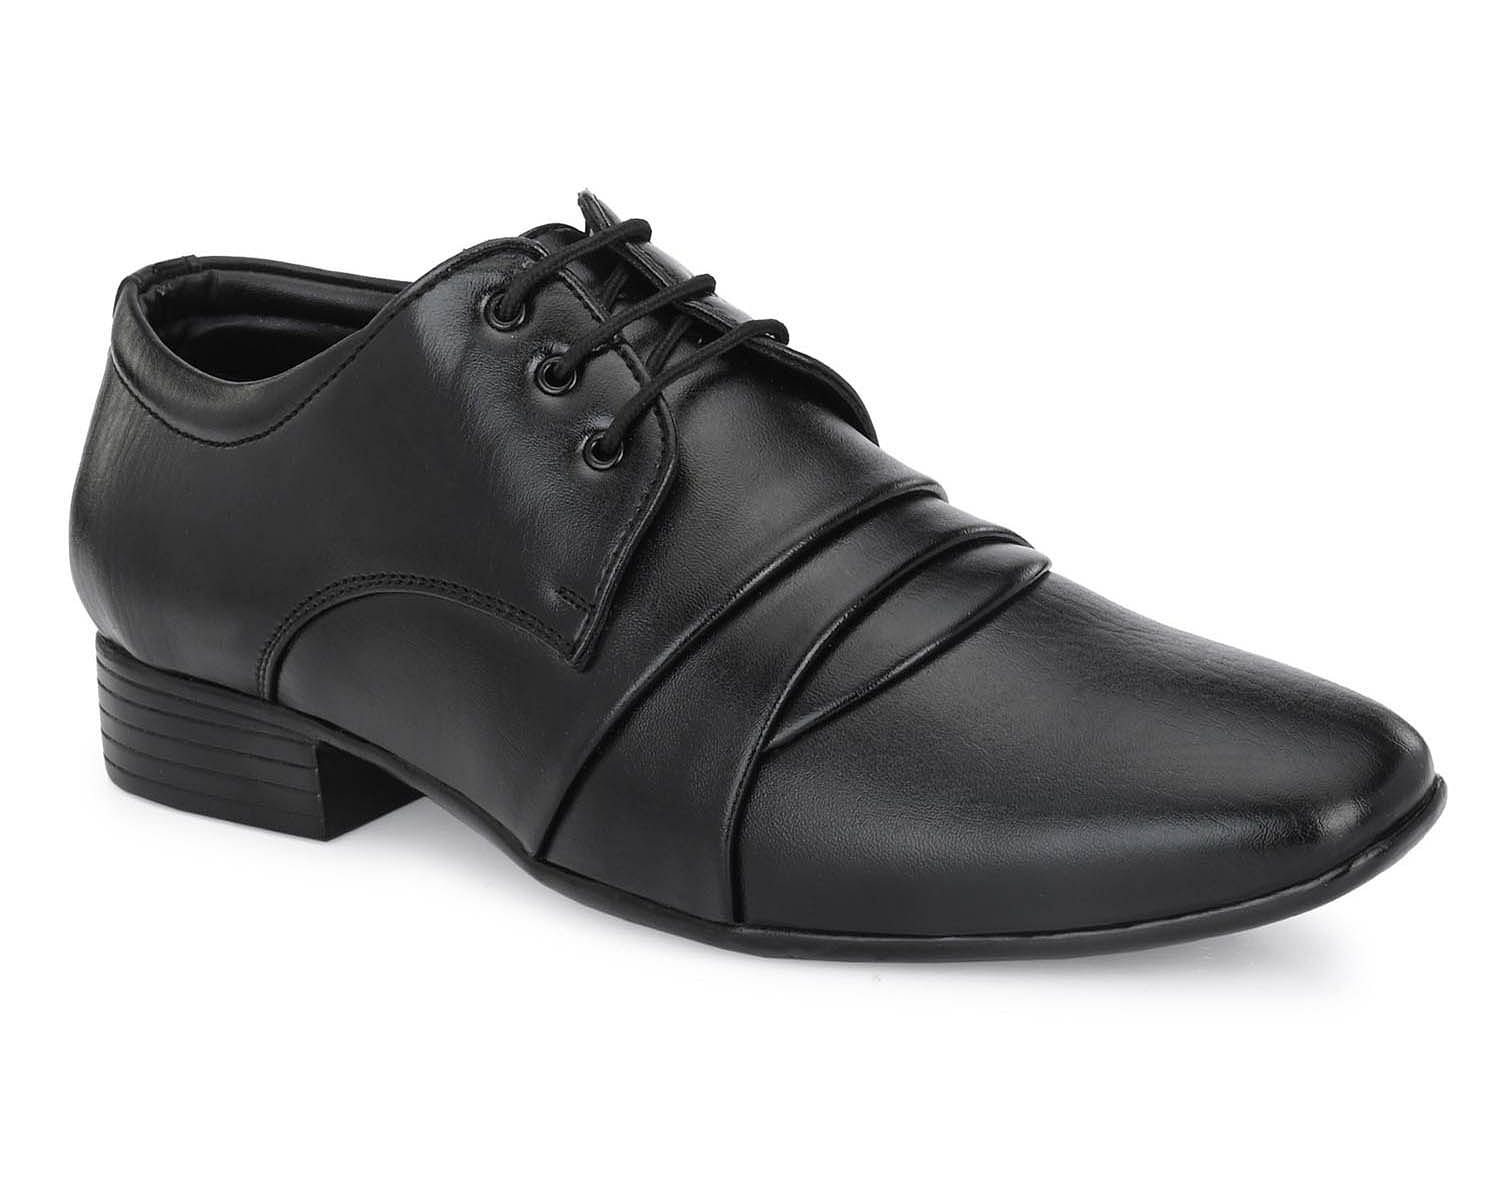 Pair-it Men moccasin Formal Shoes - LZ-RYDER-113 - Black